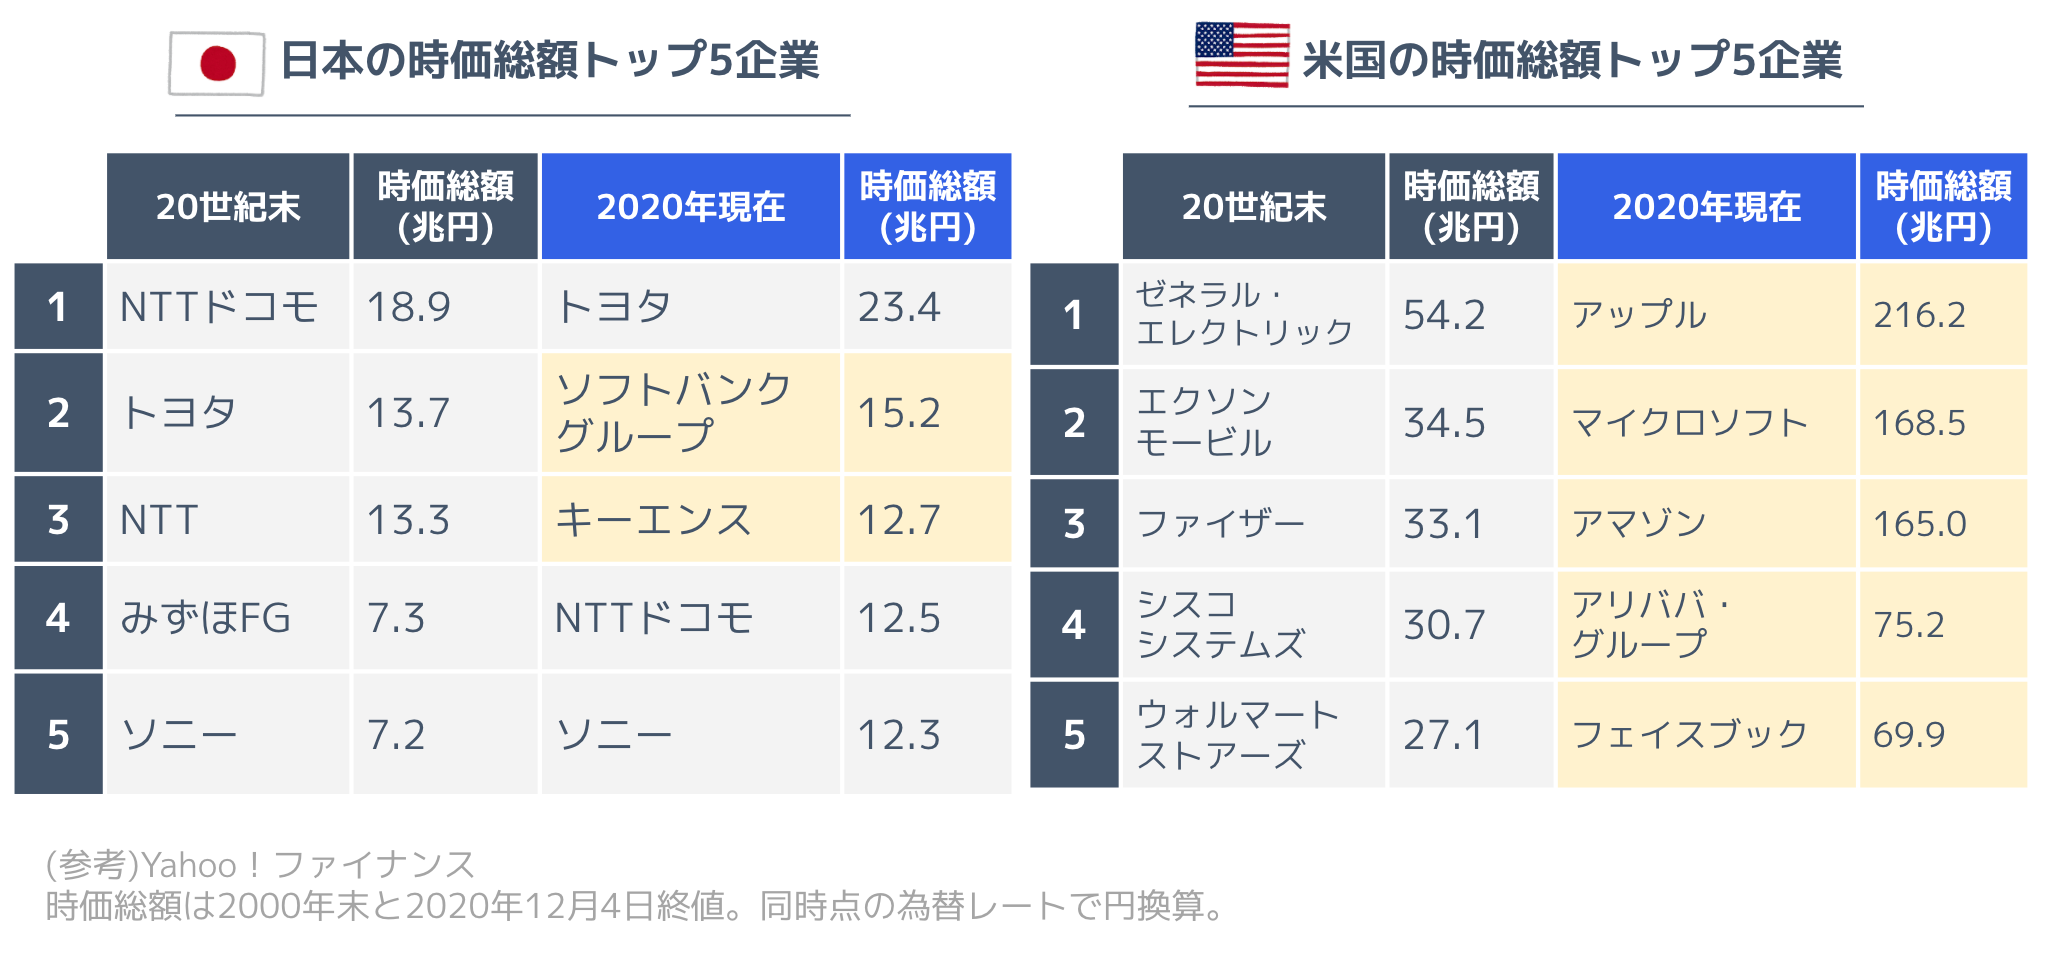 日本の時価総額トップ5企業と米国の時価総額トップ5企業